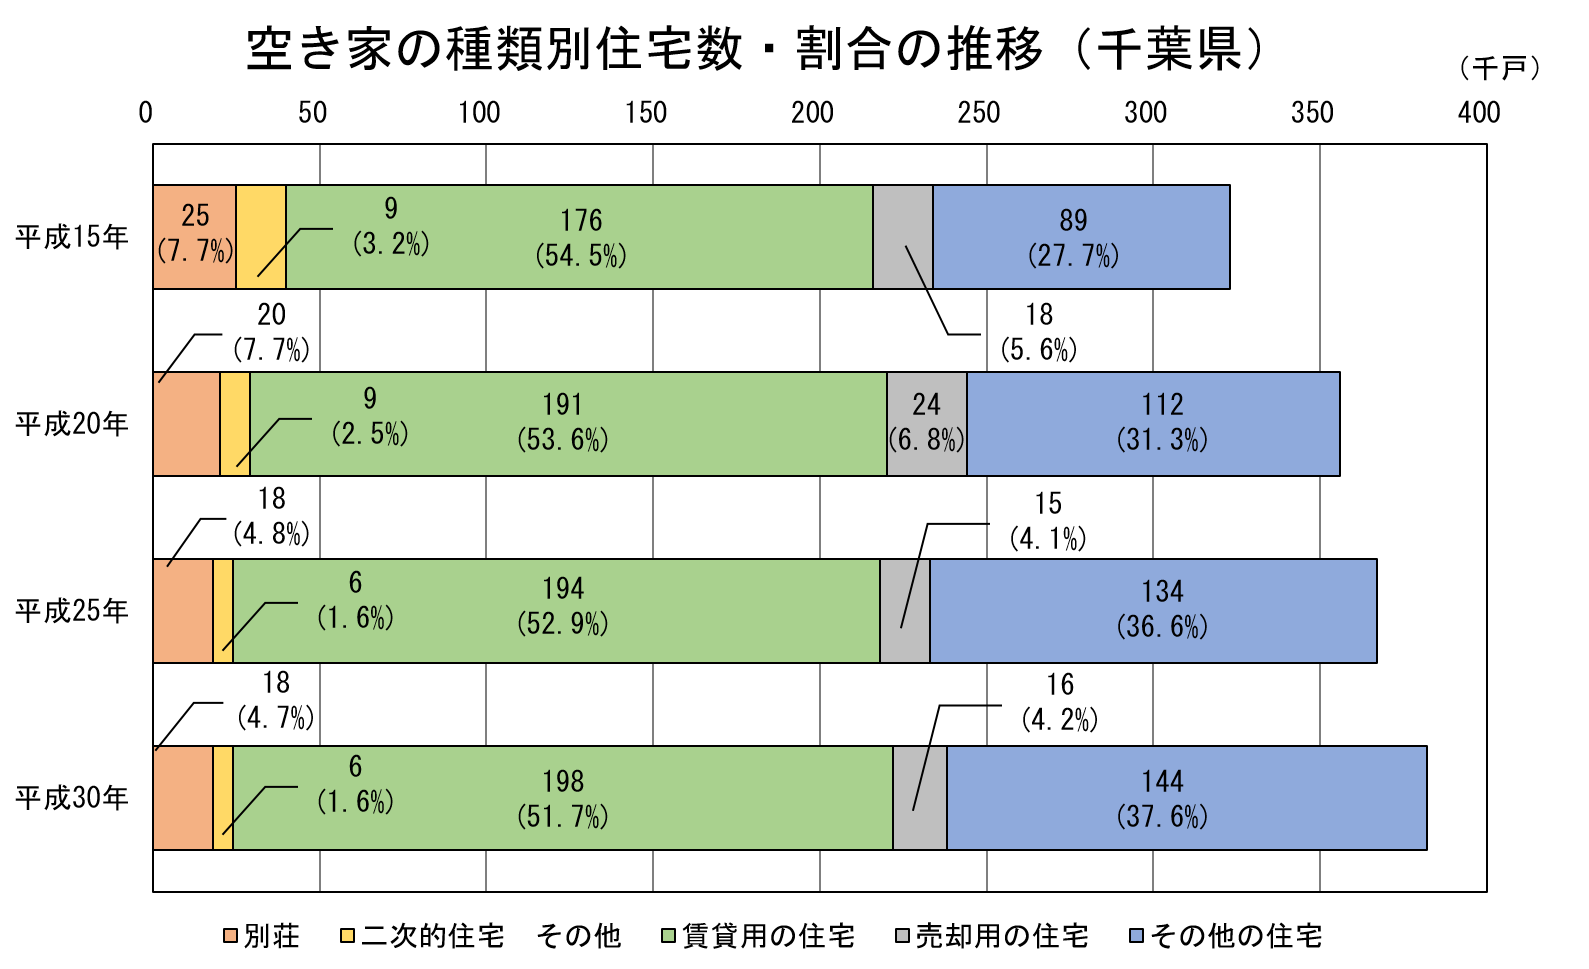 空き家の種類別住宅数・割合の推移(千葉県)平成15年から平成30年